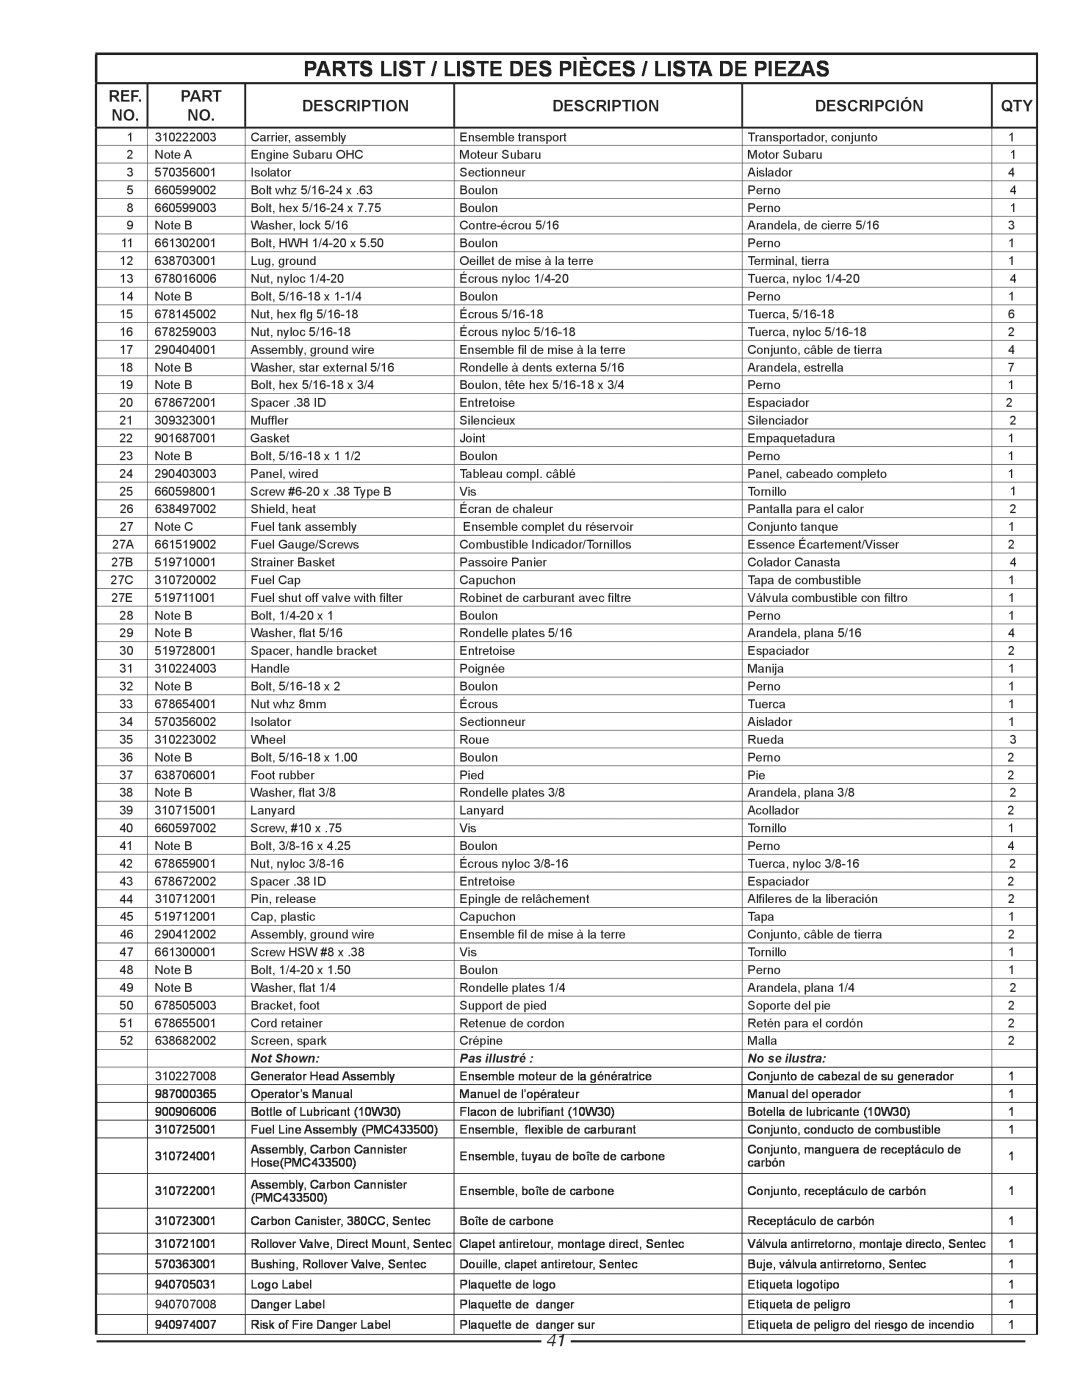 Homelite HG3510 Parts List / Liste Des Pièces / Lista De Piezas, Description, Descripción, Not Shown, Pas illustré 